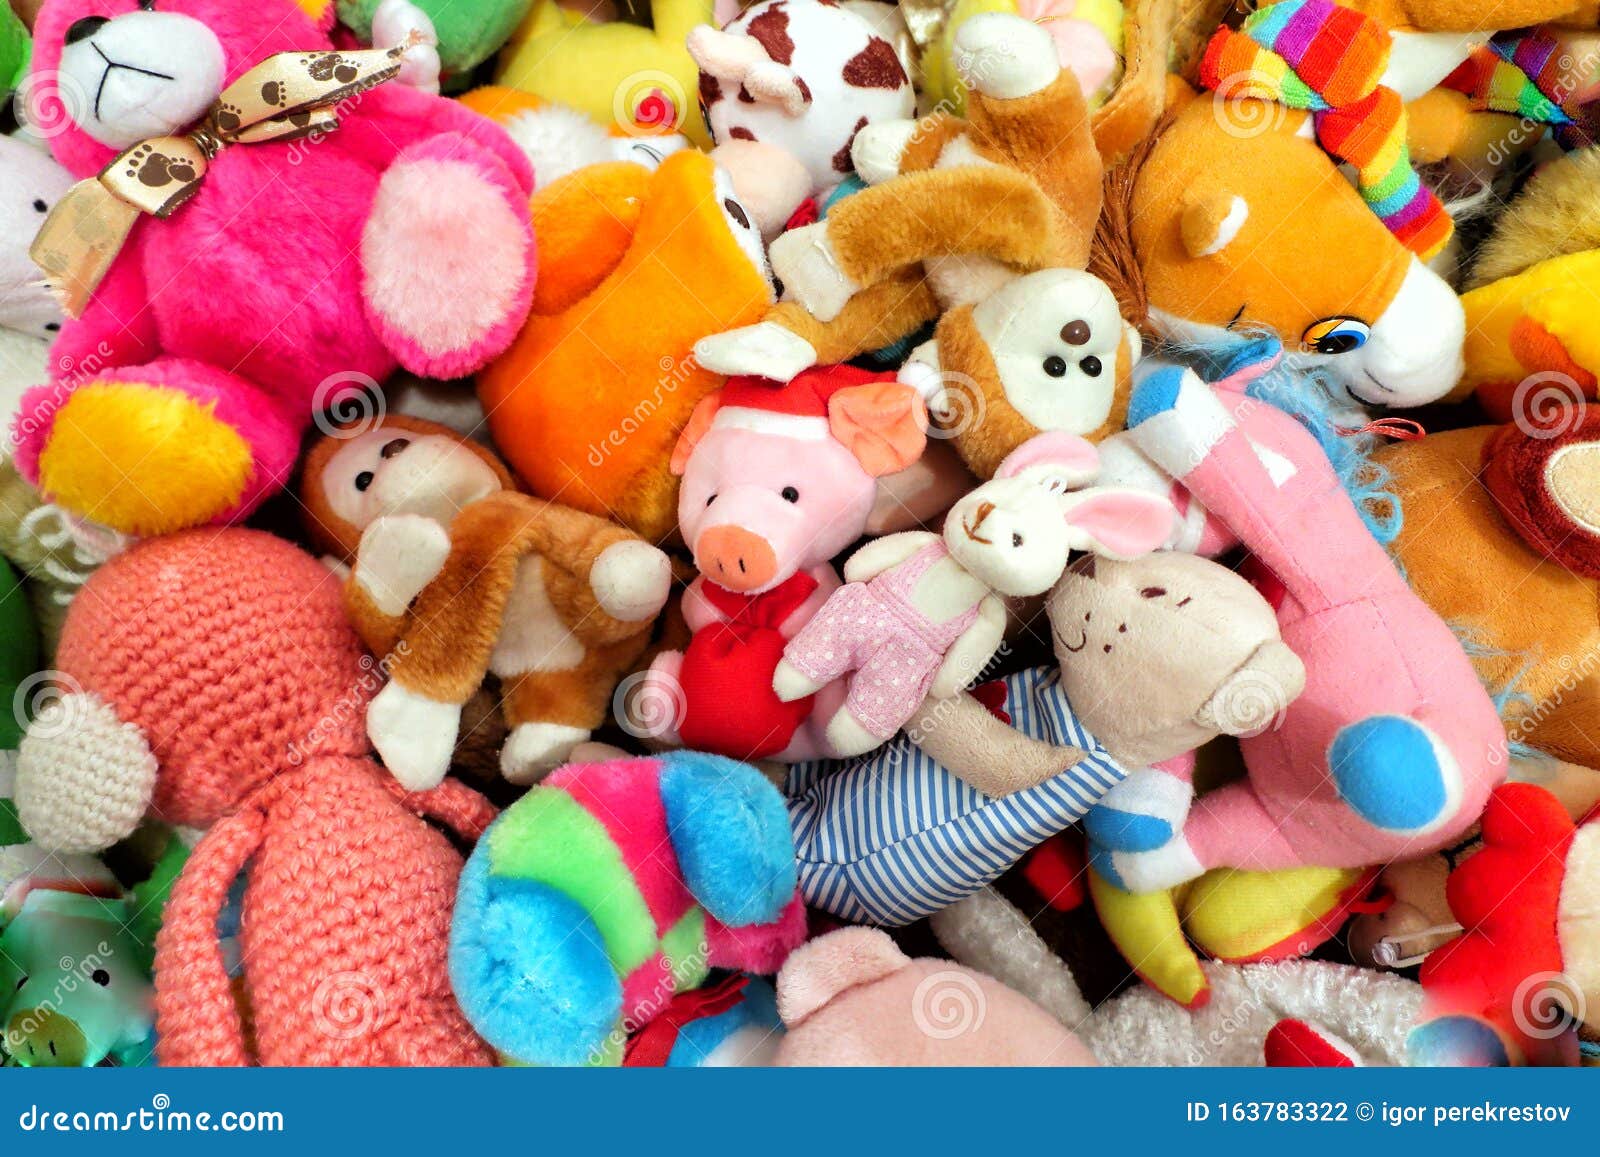 Нужны большие игрушки. Куча детских вещей и игрушек. Детские игрушки мягкие много. Игрушки очень красивые разноцветные. Игрушки много и много розовых мягких.